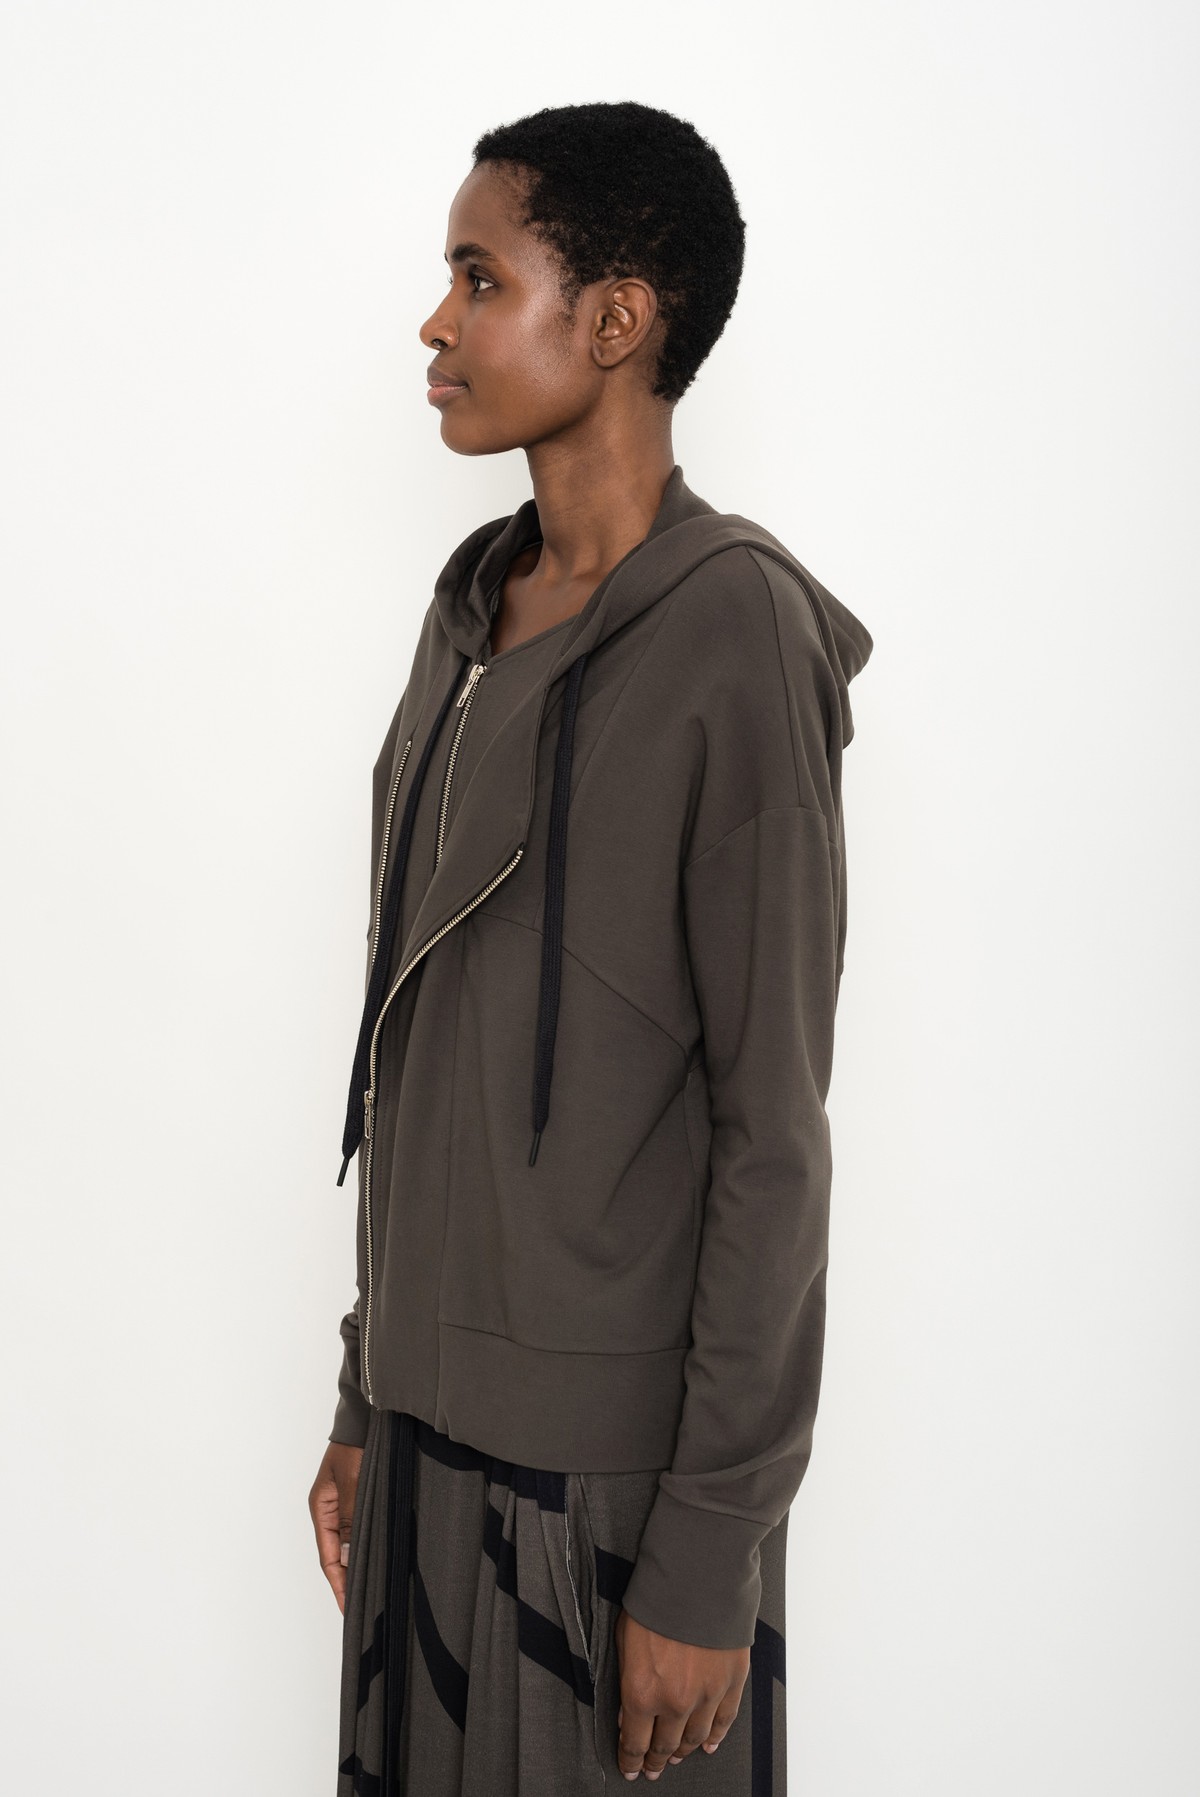 blusão assimétrico com capuz | asymmetric hoodie with cutouts